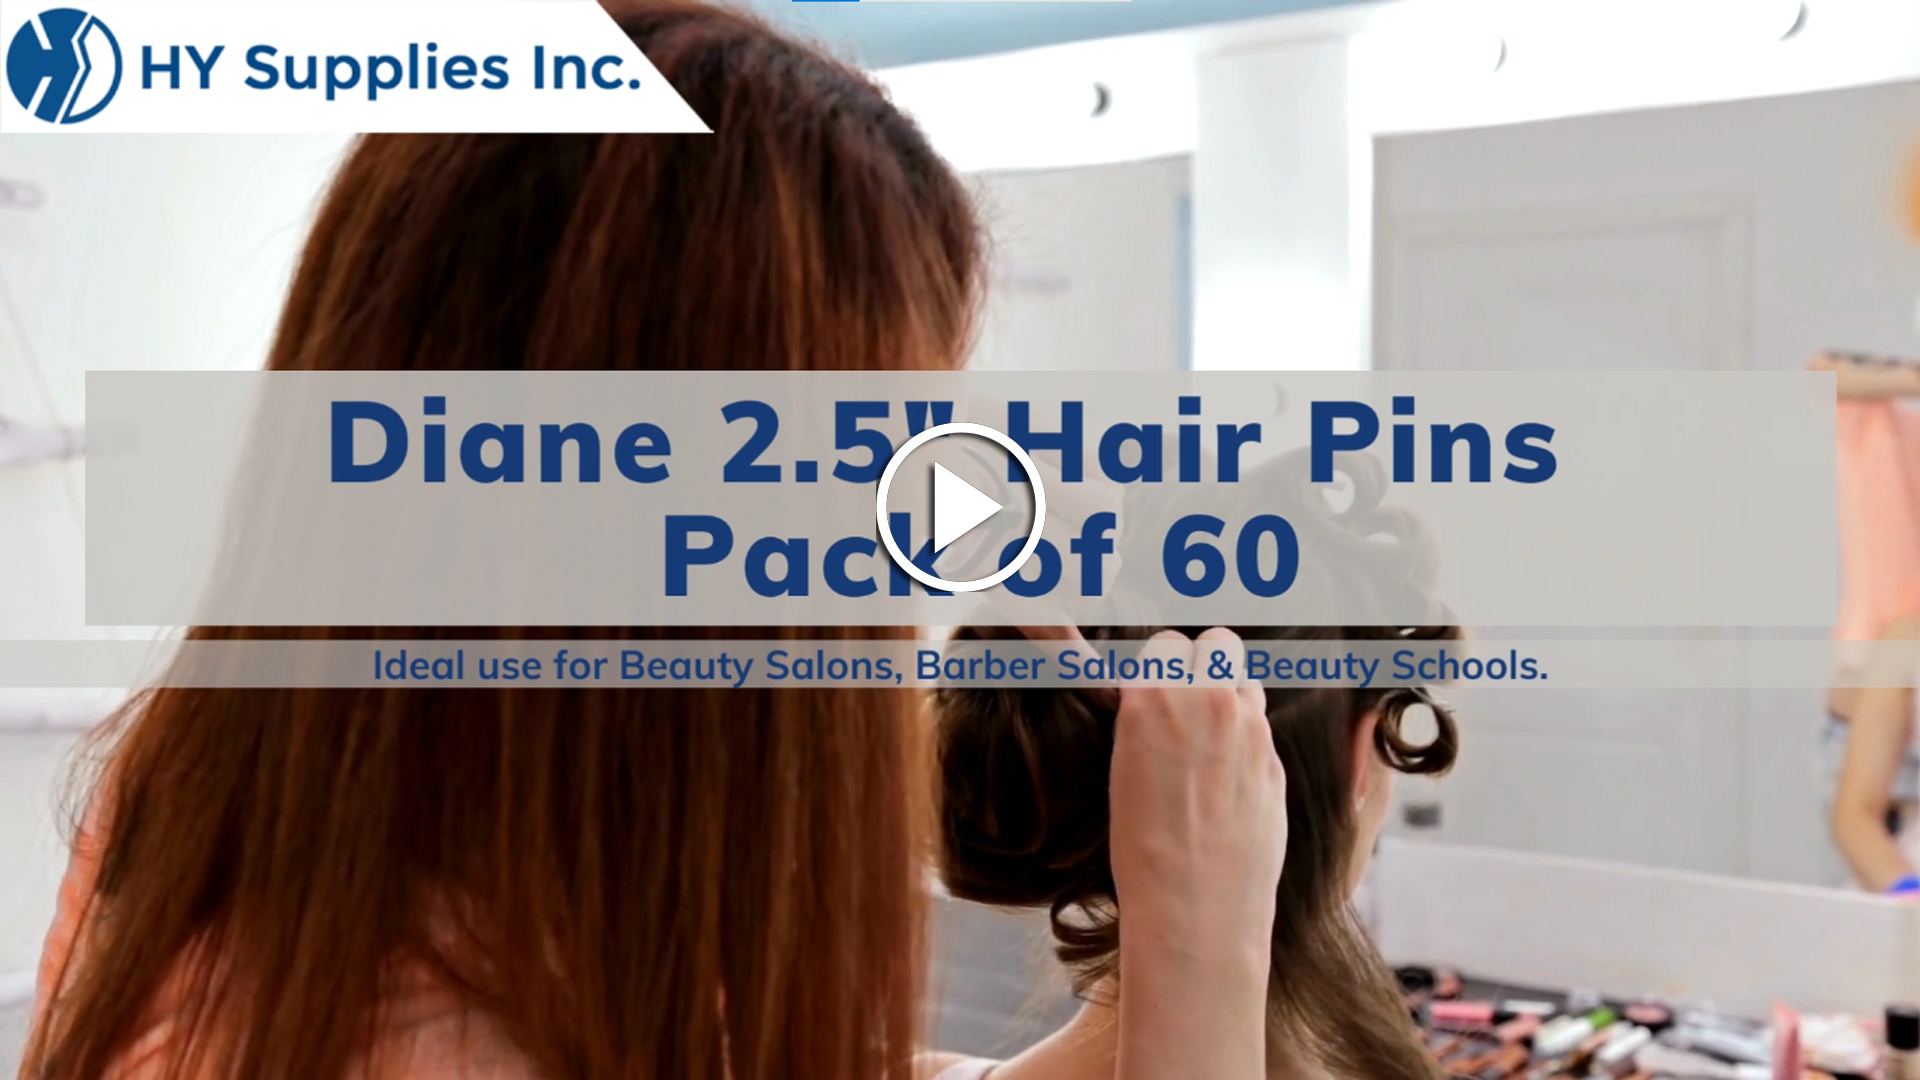 Diane 2.5"Hair Pins - Pack of 60